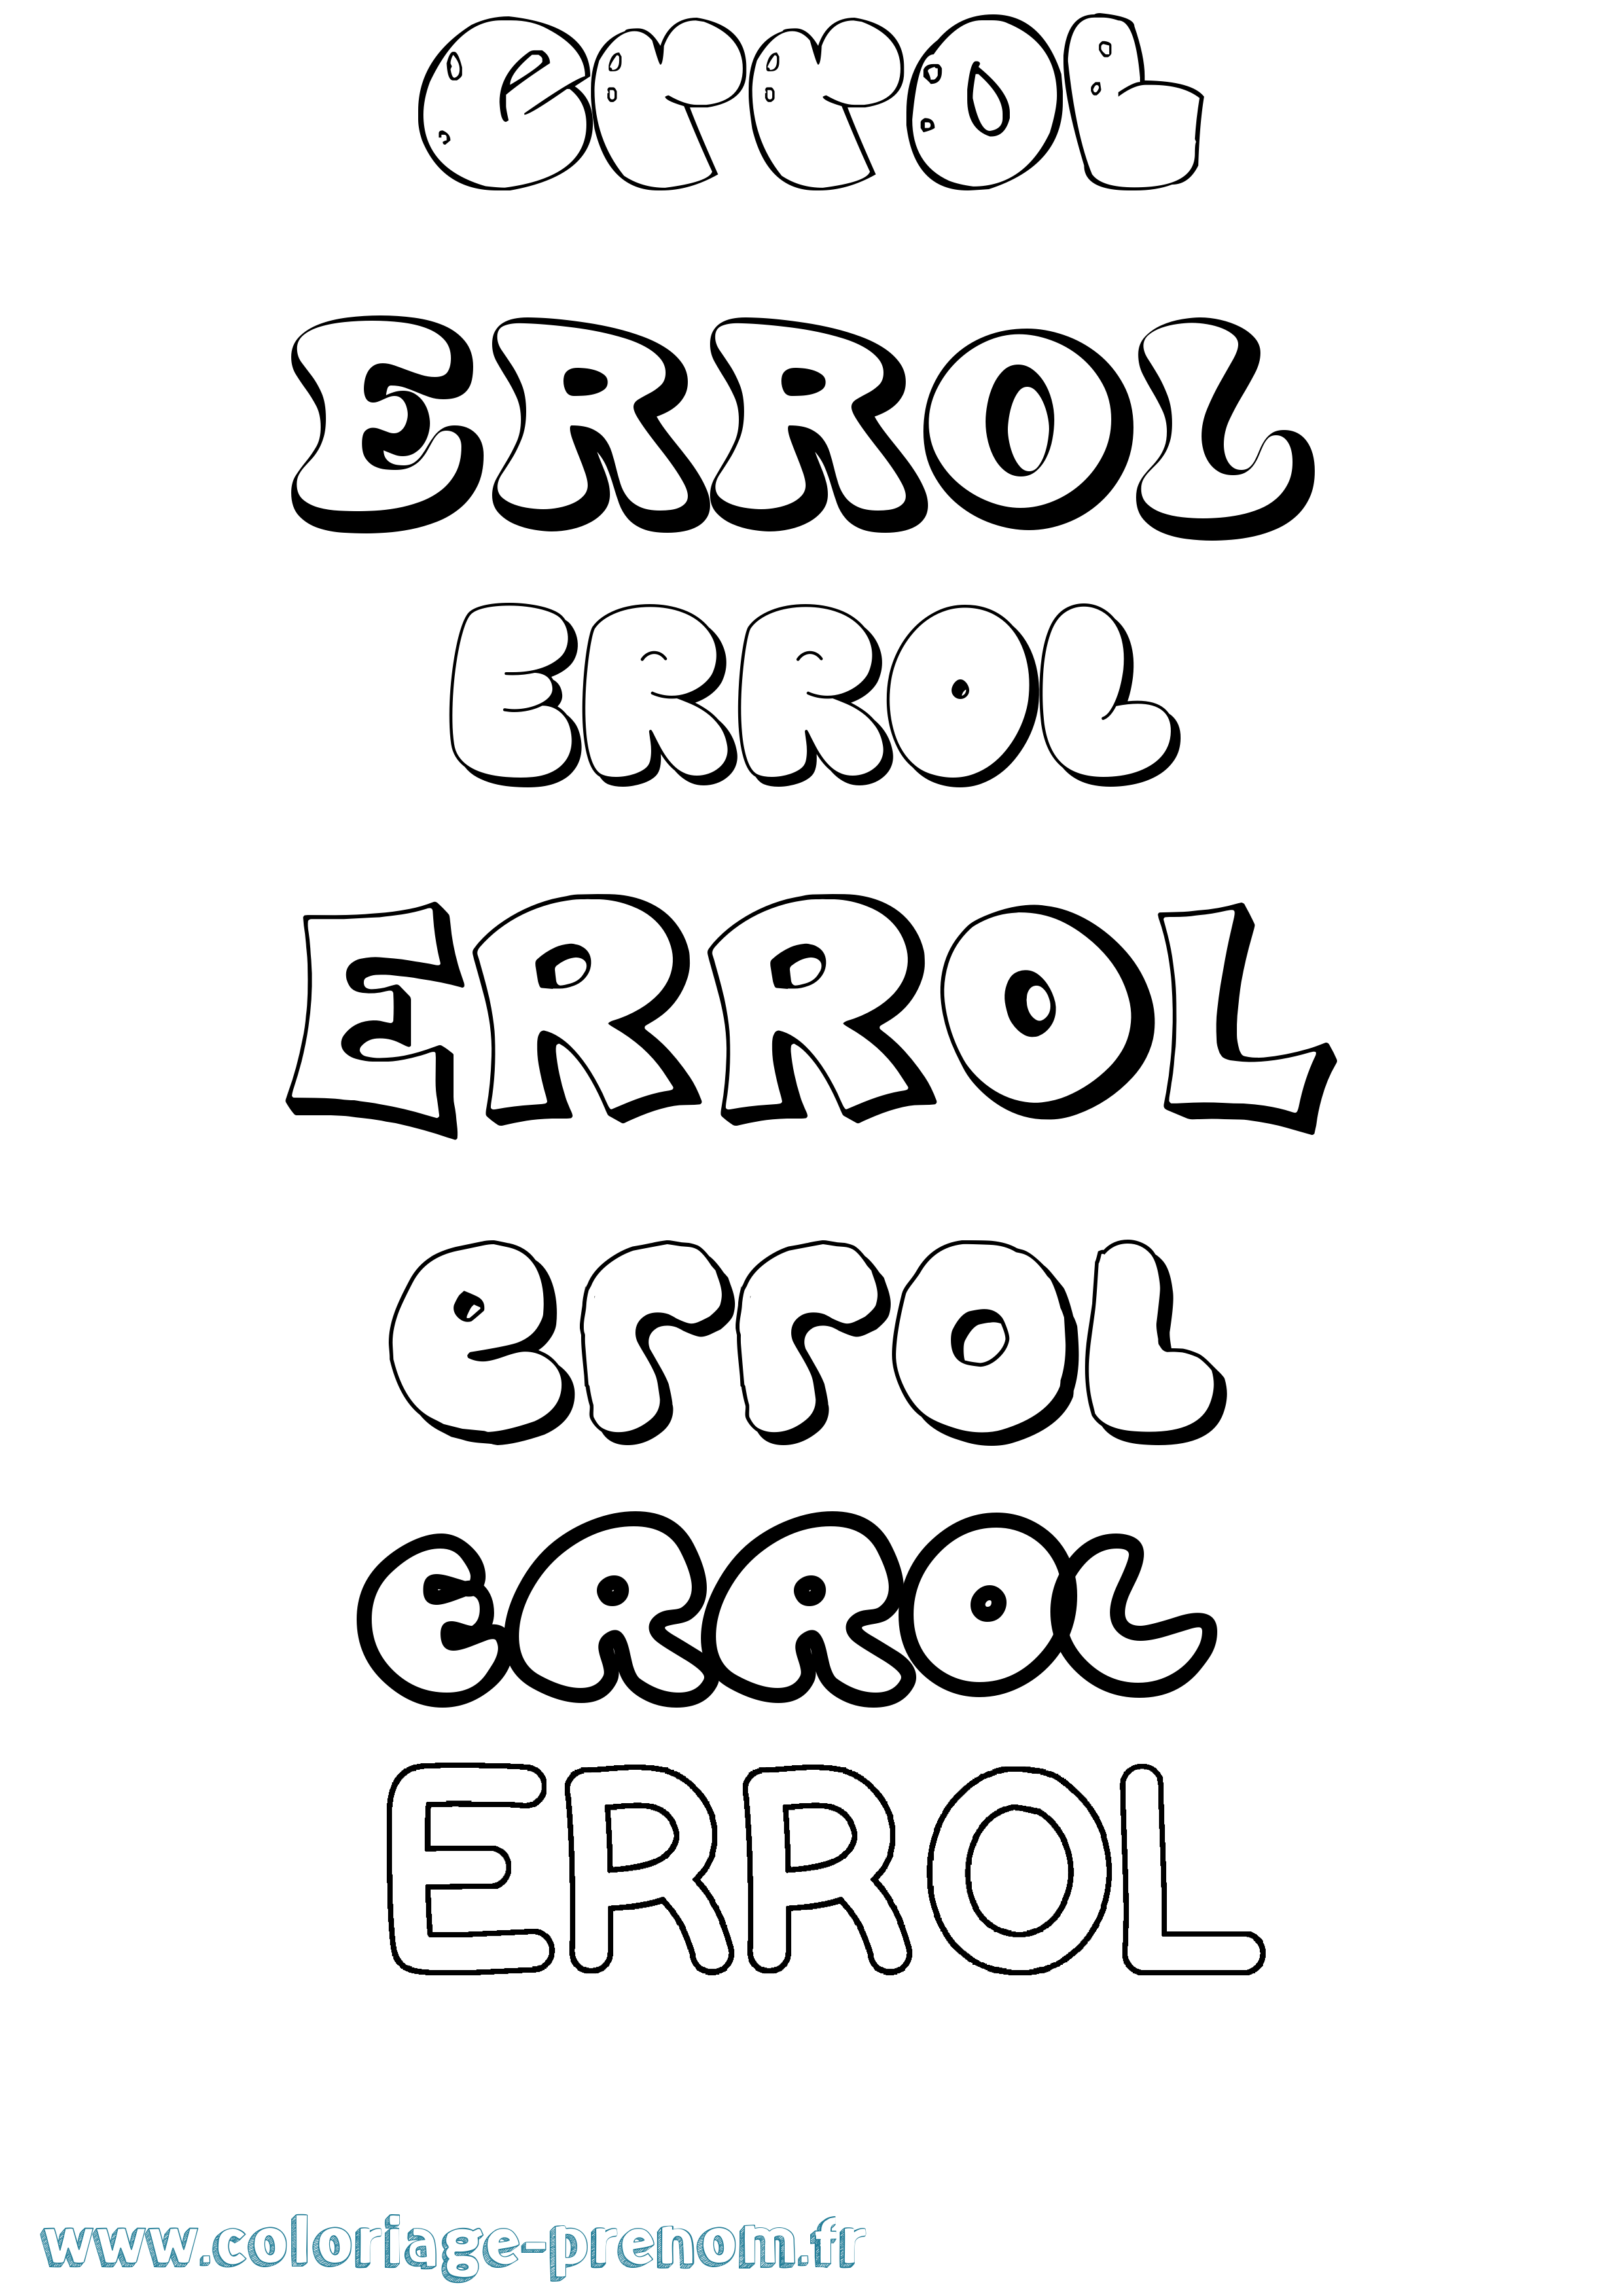 Coloriage prénom Errol Bubble